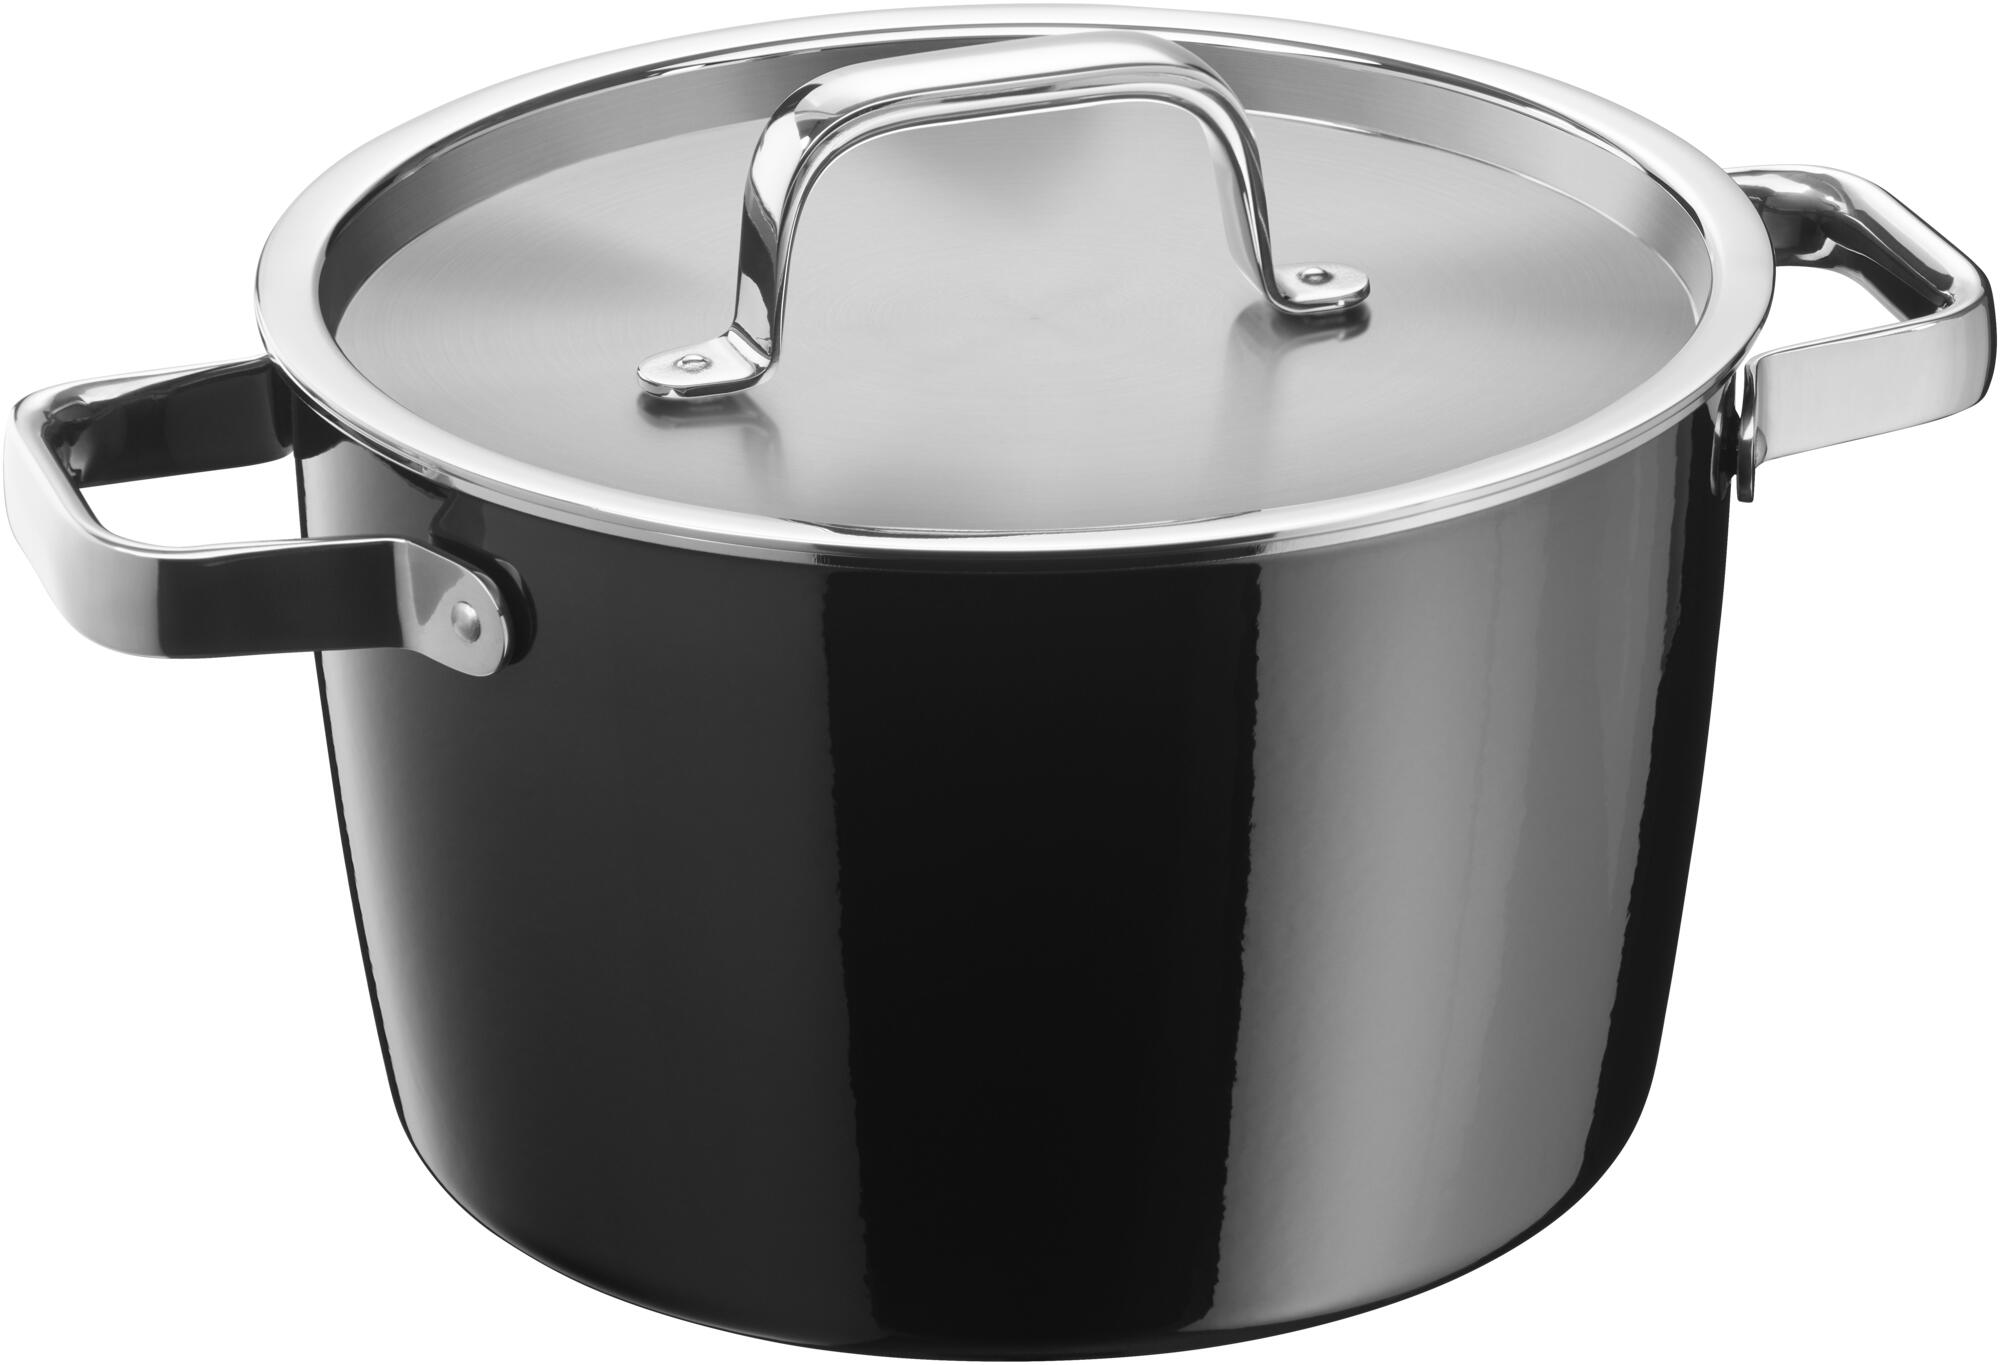 WMF Fusiontec Aromatic Soup Pot 22cm Black